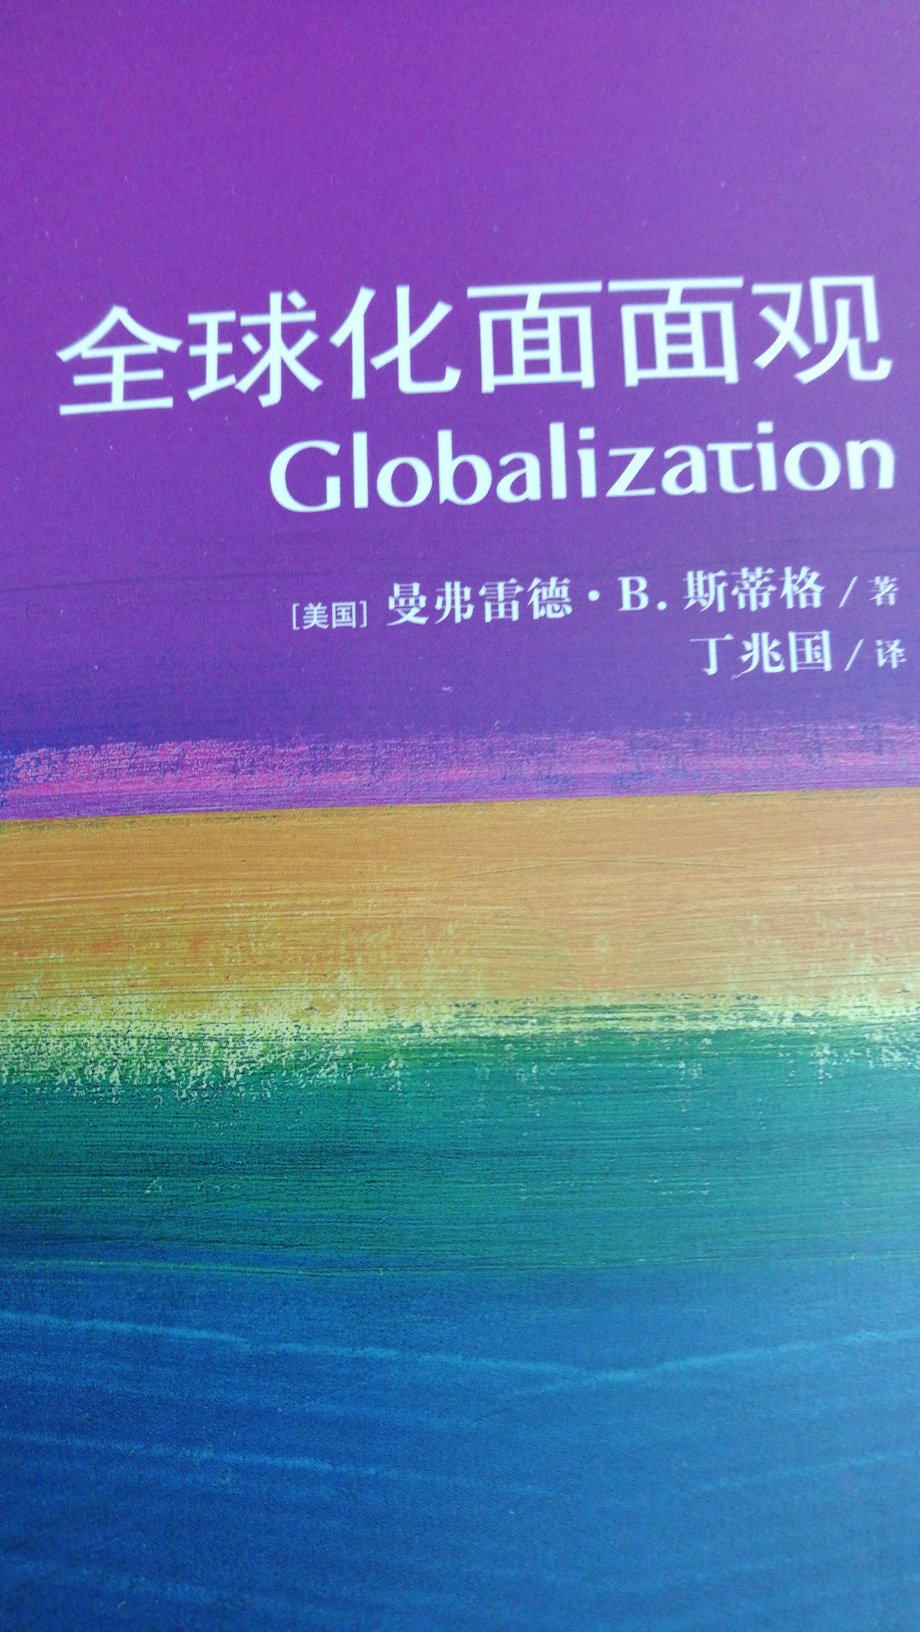 这本书指出，全球化远不止是指一种既有的状态，也是指一种能动的过程。作者认为，全球化是塑造当代世界基本性质的最主要因素之一。